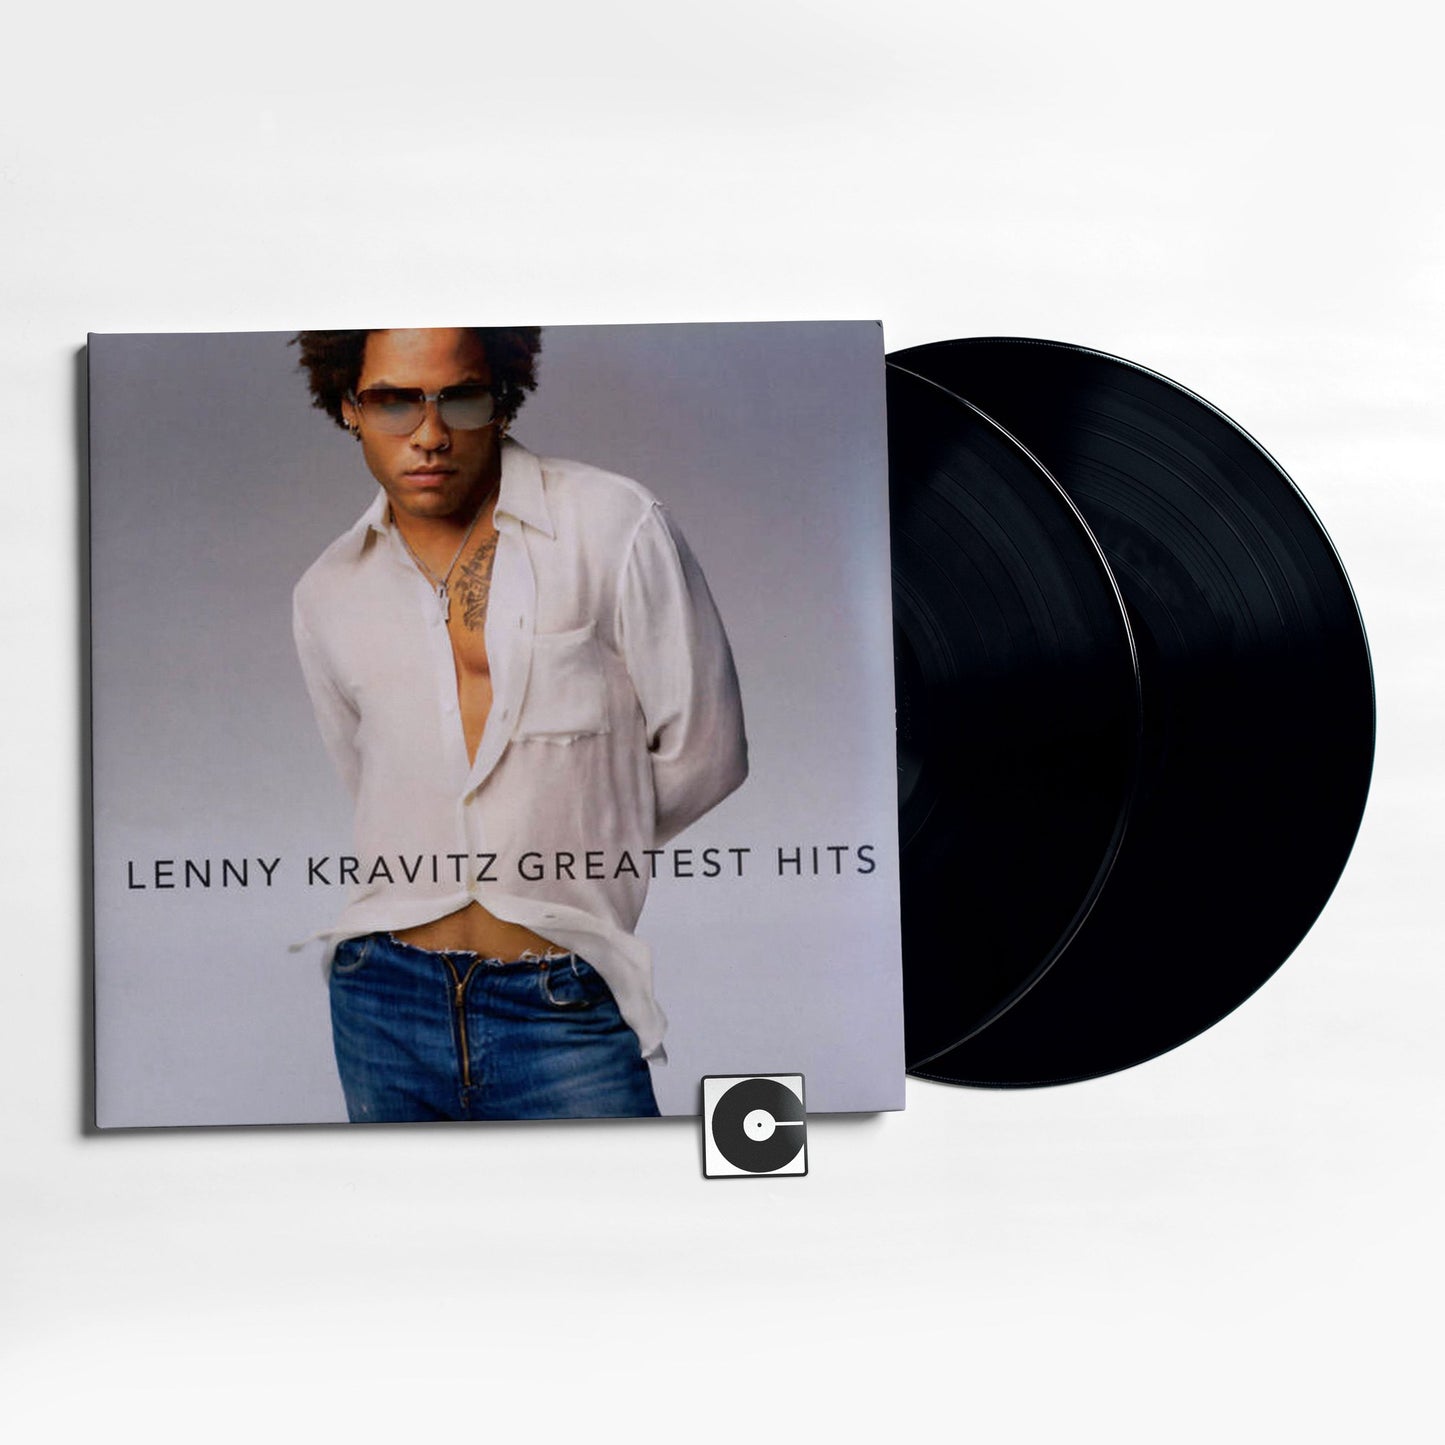 Lenny Kravitz - "Greatest Hits"